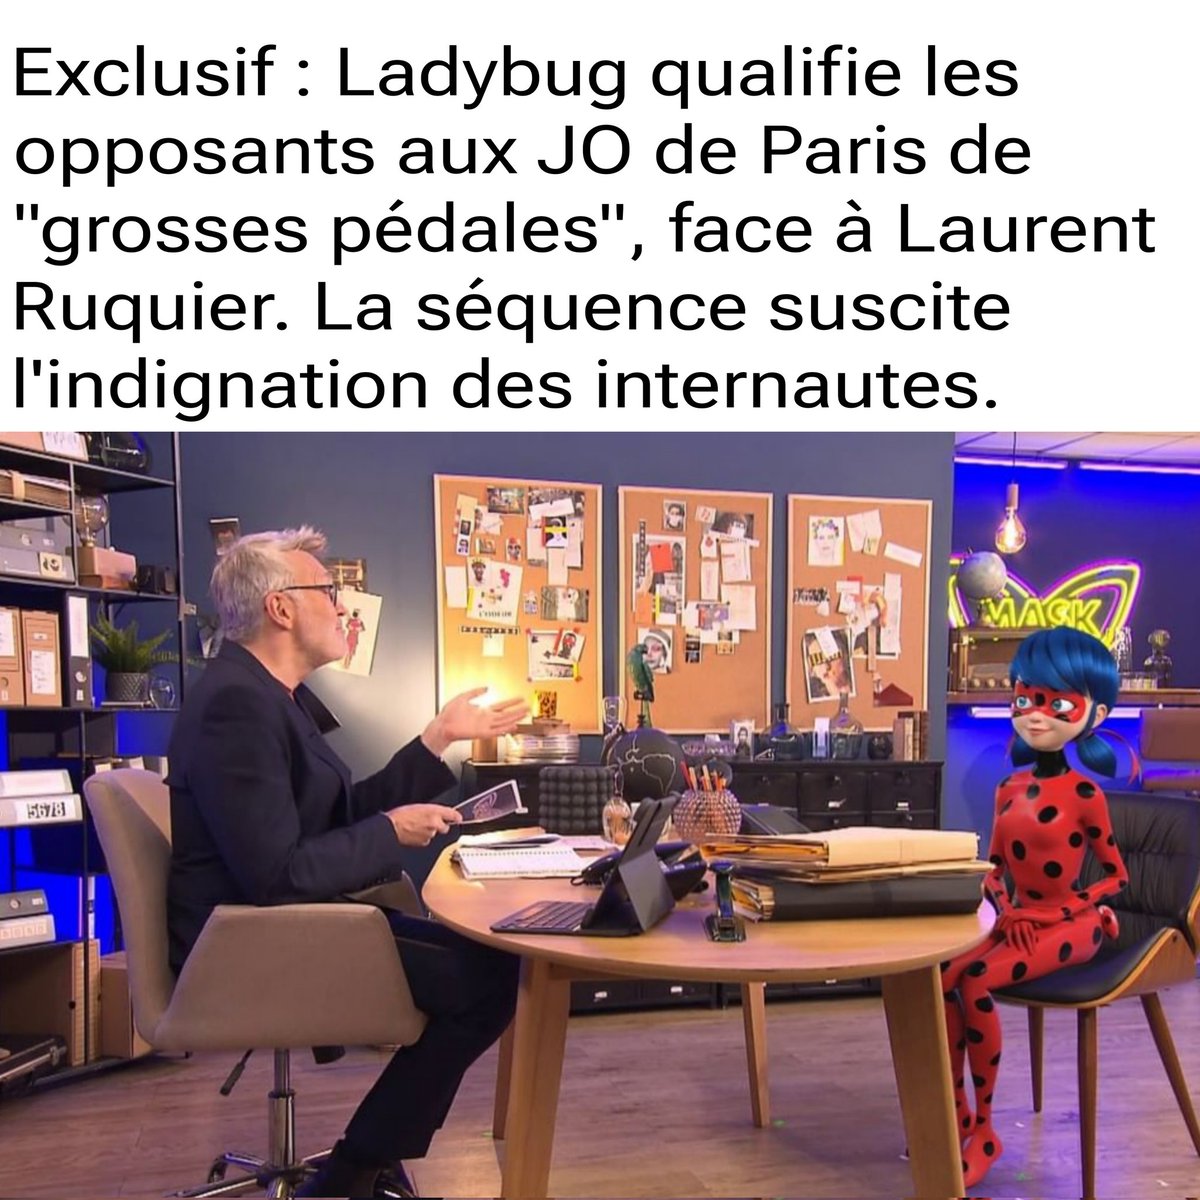 🔴 Exclusif : nouvelle polémique autour de la petite phrase de Ladybug.